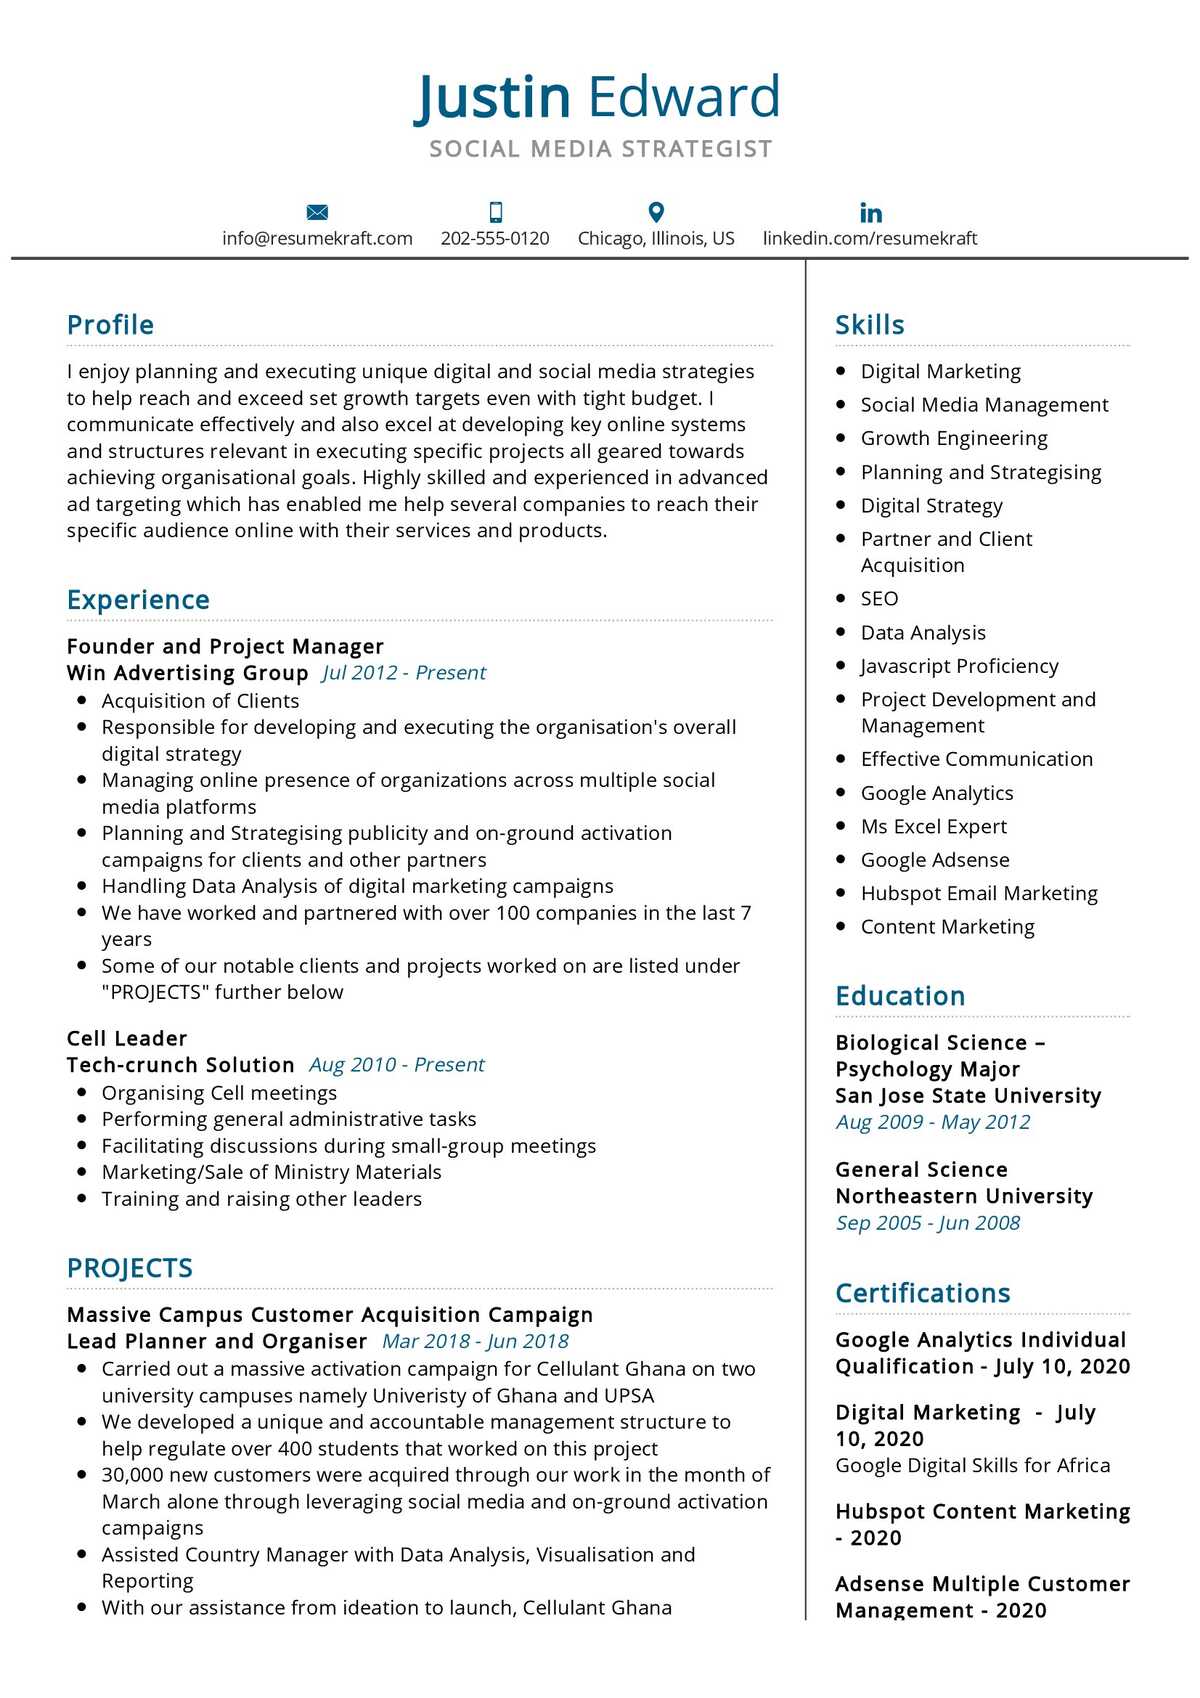 T ensillar Lujo Social Media Strategist Resume Sample 2023 | Writing Tips - ResumeKraft